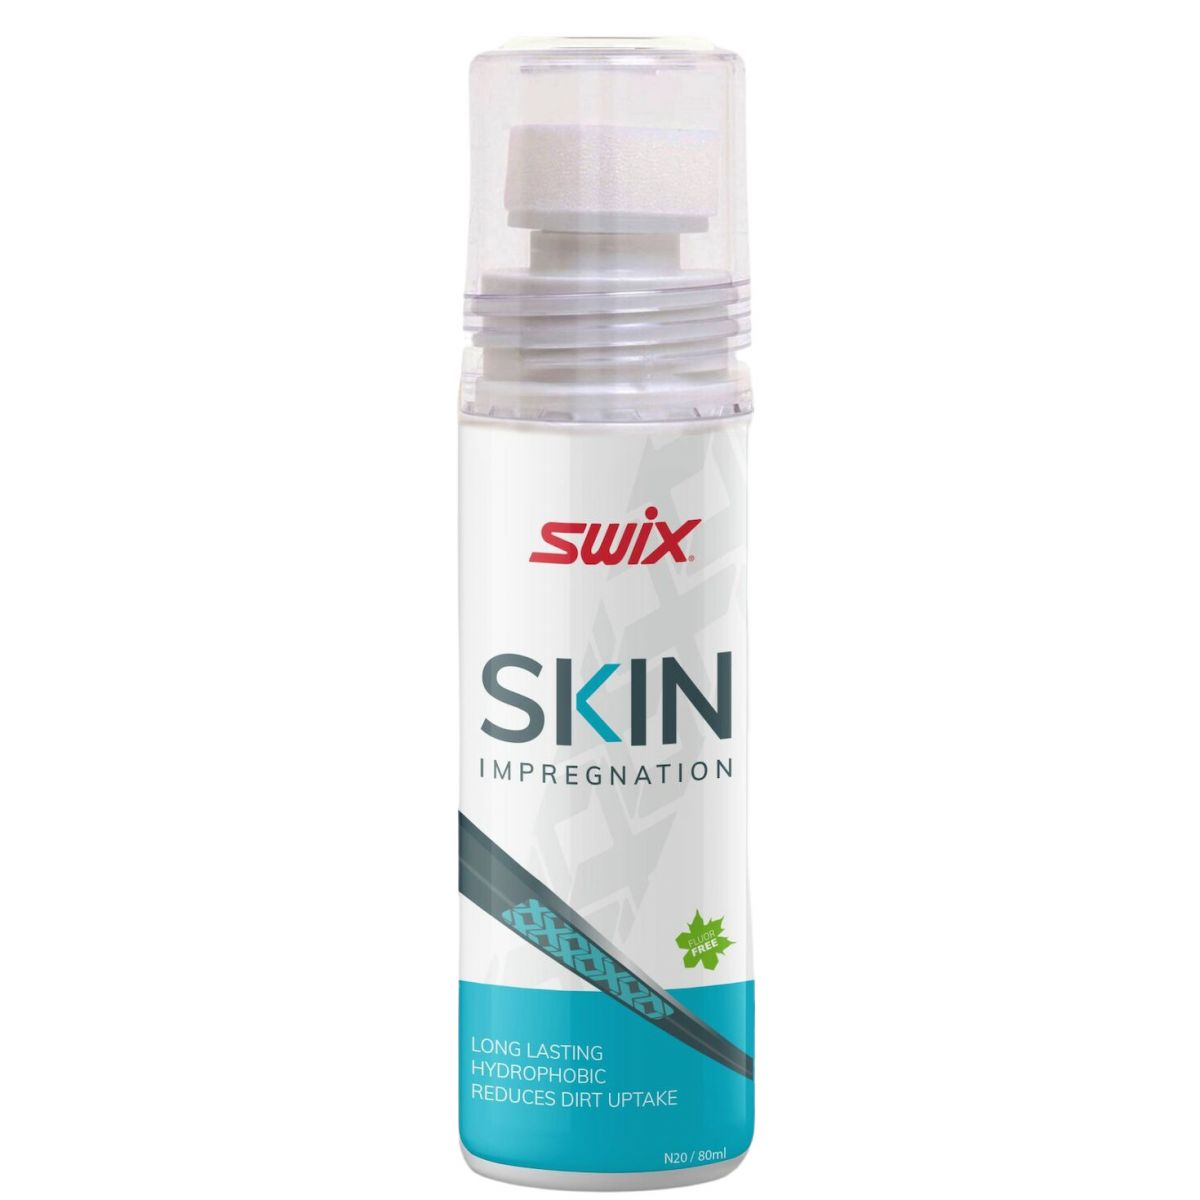 Brug Swix Skin Impregnation, cleaner, 80ml til en forbedret oplevelse